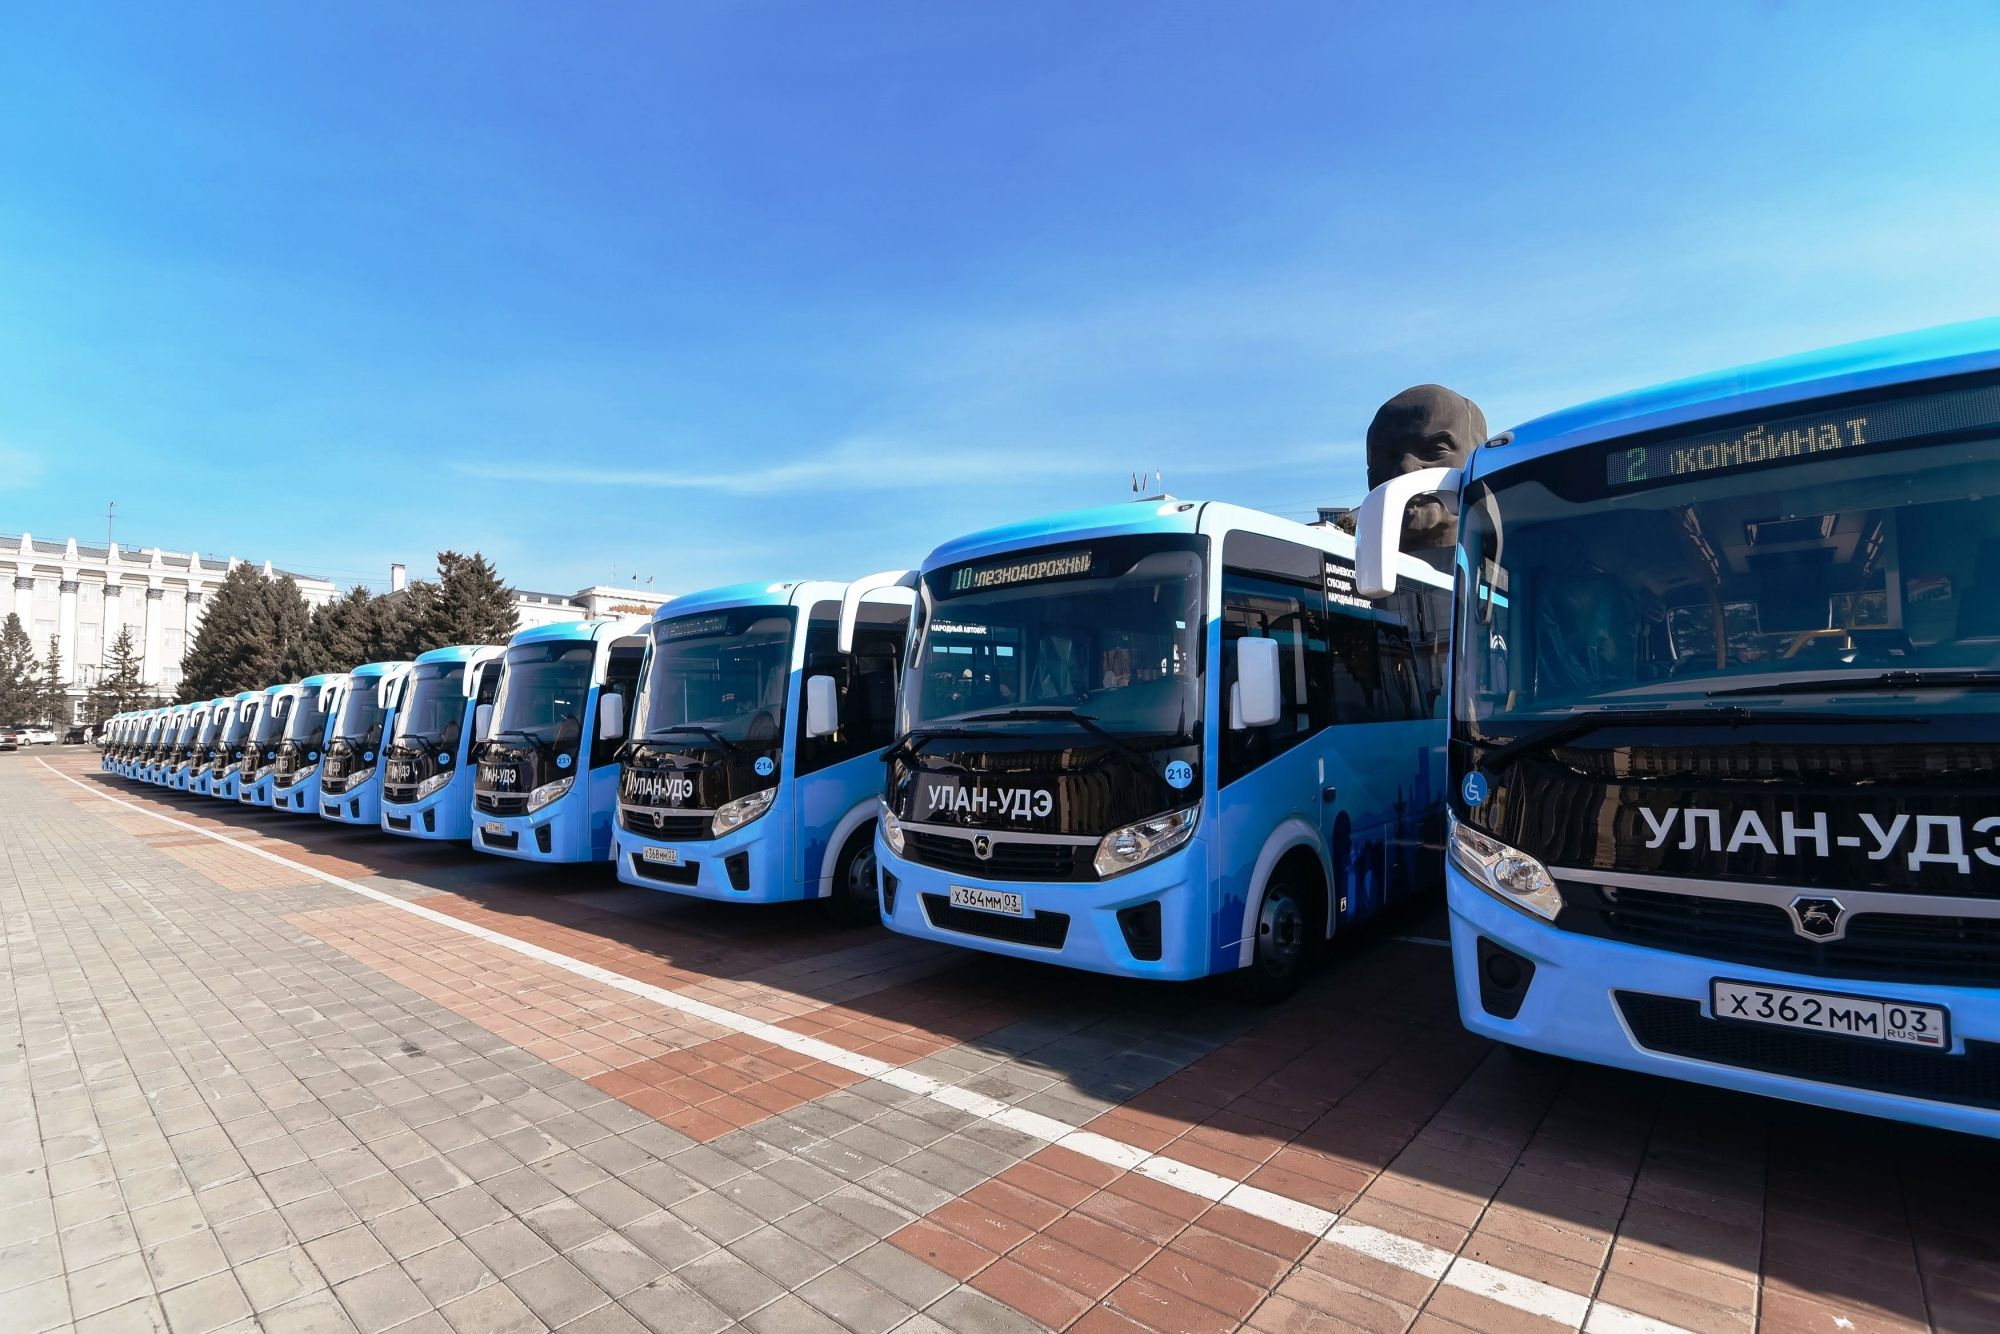 Фото Улан-Удэ получит 300 млн рублей на покупку новых автобусов 